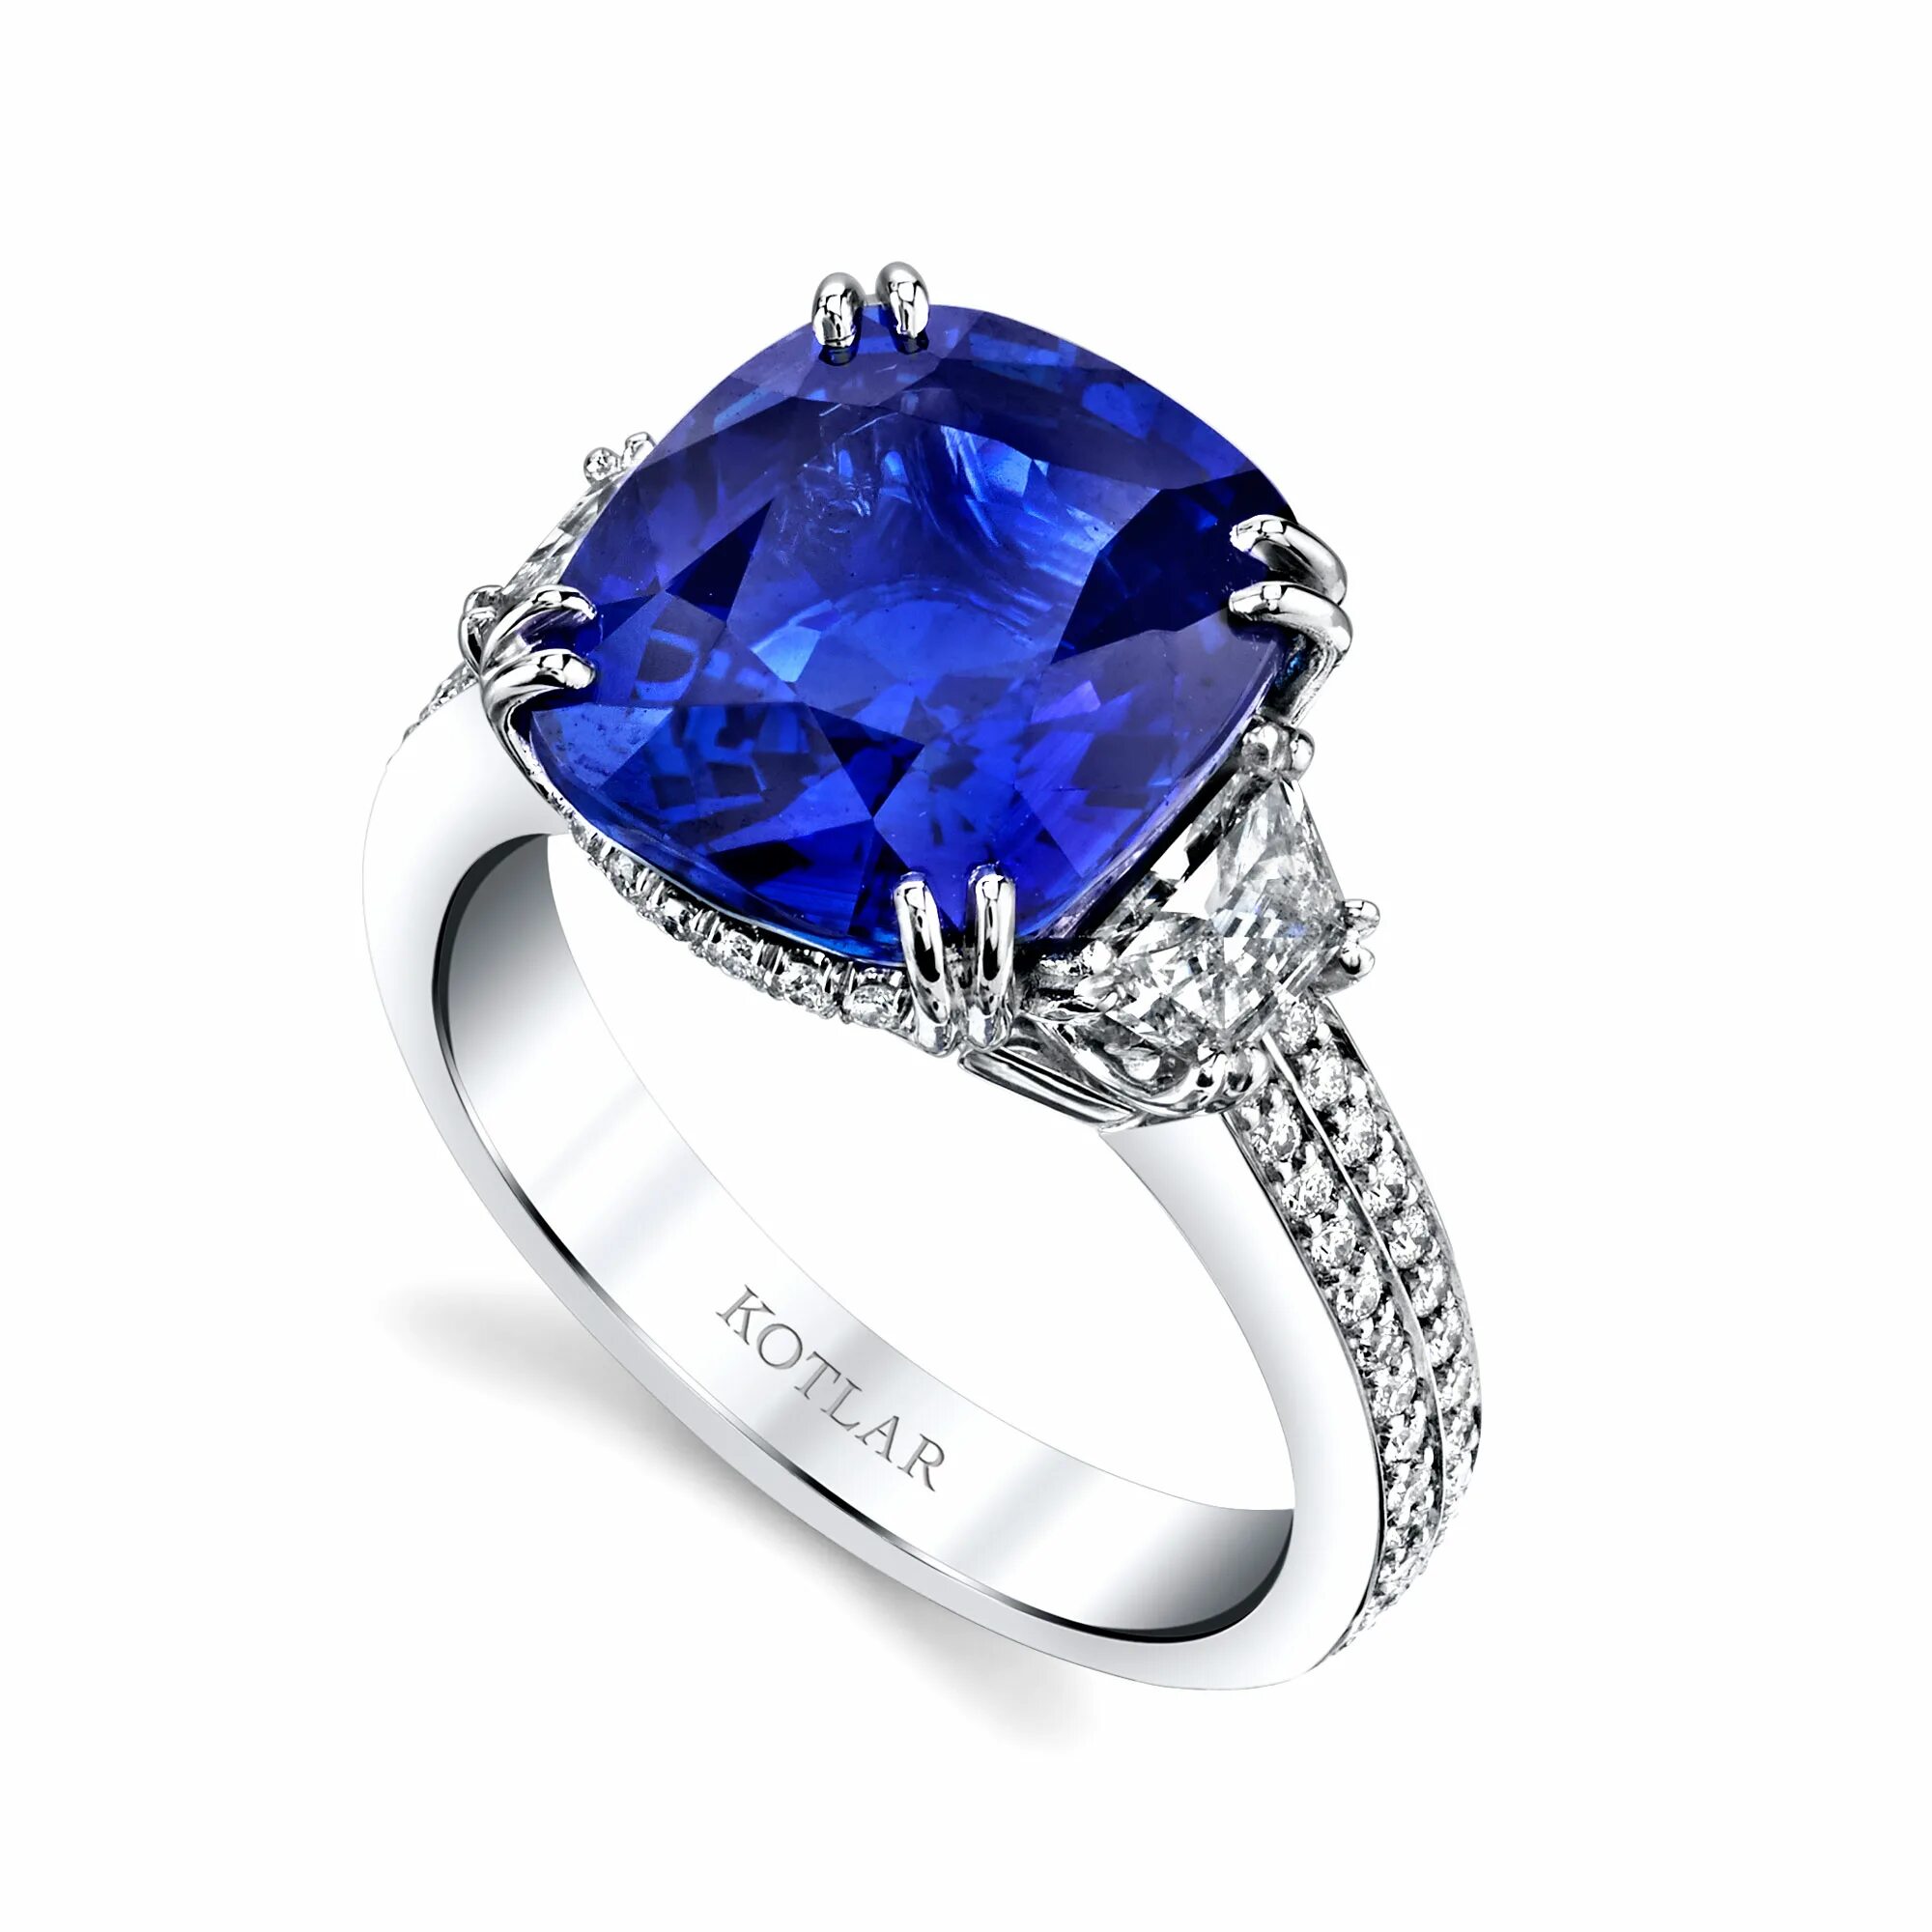 Abr4121 кольцо сапфир. Bvlgari Blue Sapphire. Кольцо с сапфиром булгари. Ювелирные изделия булгари с сапфиром.